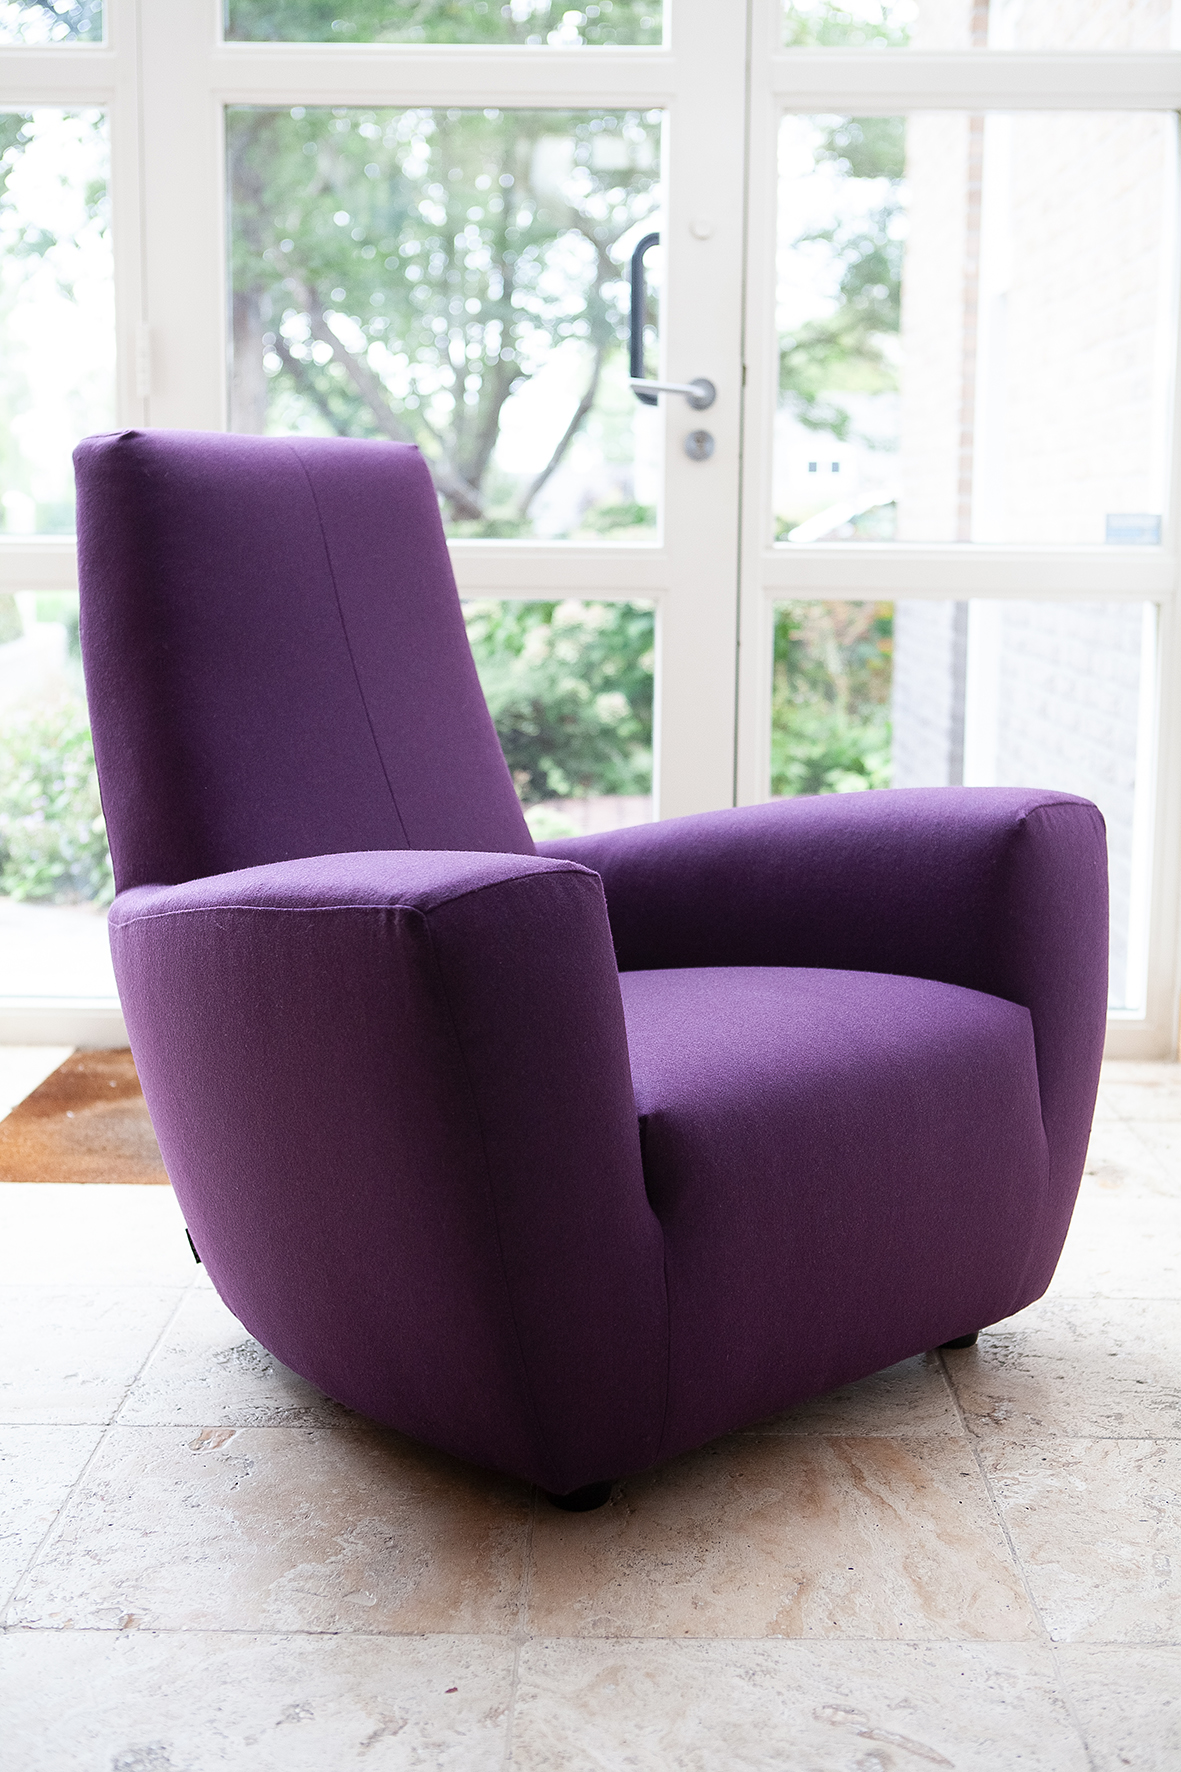 Reden Catastrofaal kopiëren Prachtige Longa design fauteuil van Label in topstaat! - Missing Piece